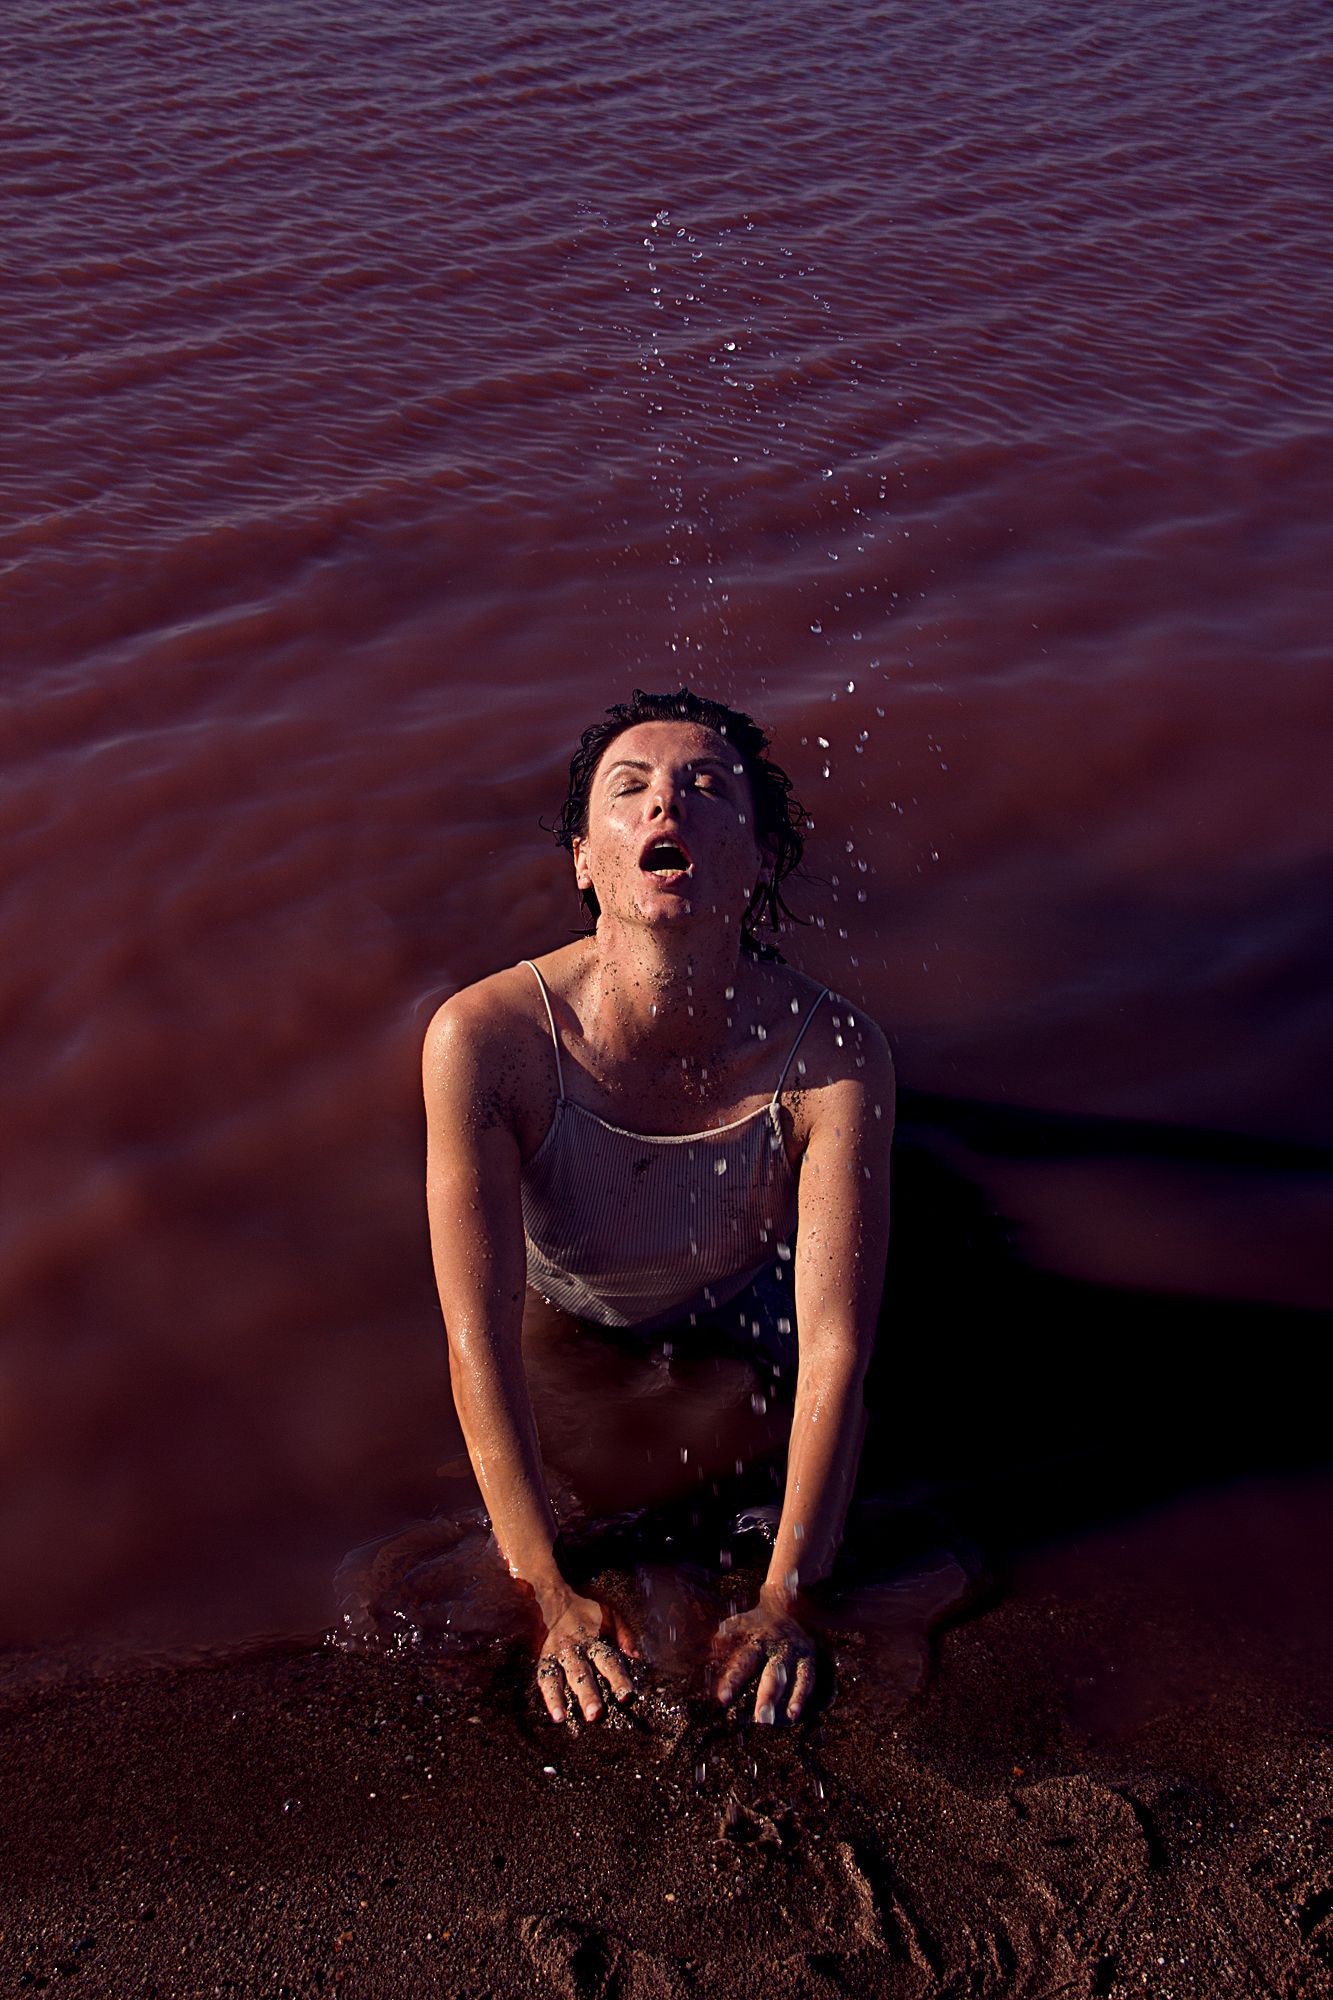 Water, розовое озеро, девушка , Ксения Okdmuse